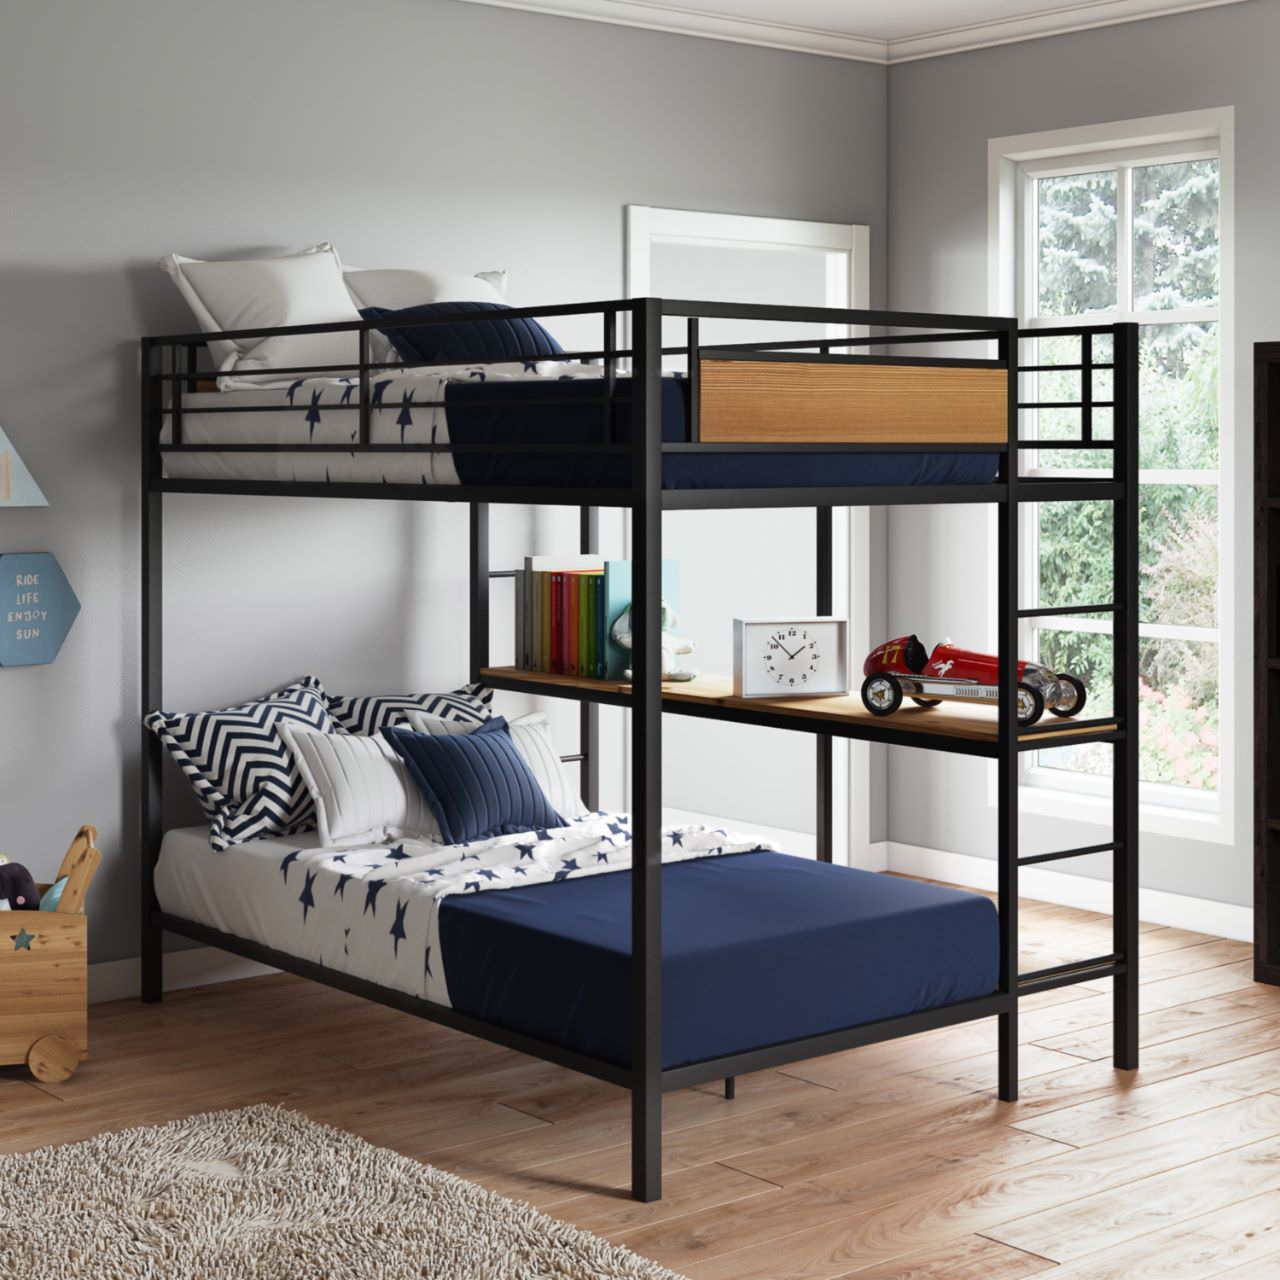 Bố trí giường tầng với kích thước tiêu chuẩn có kèm bàn học